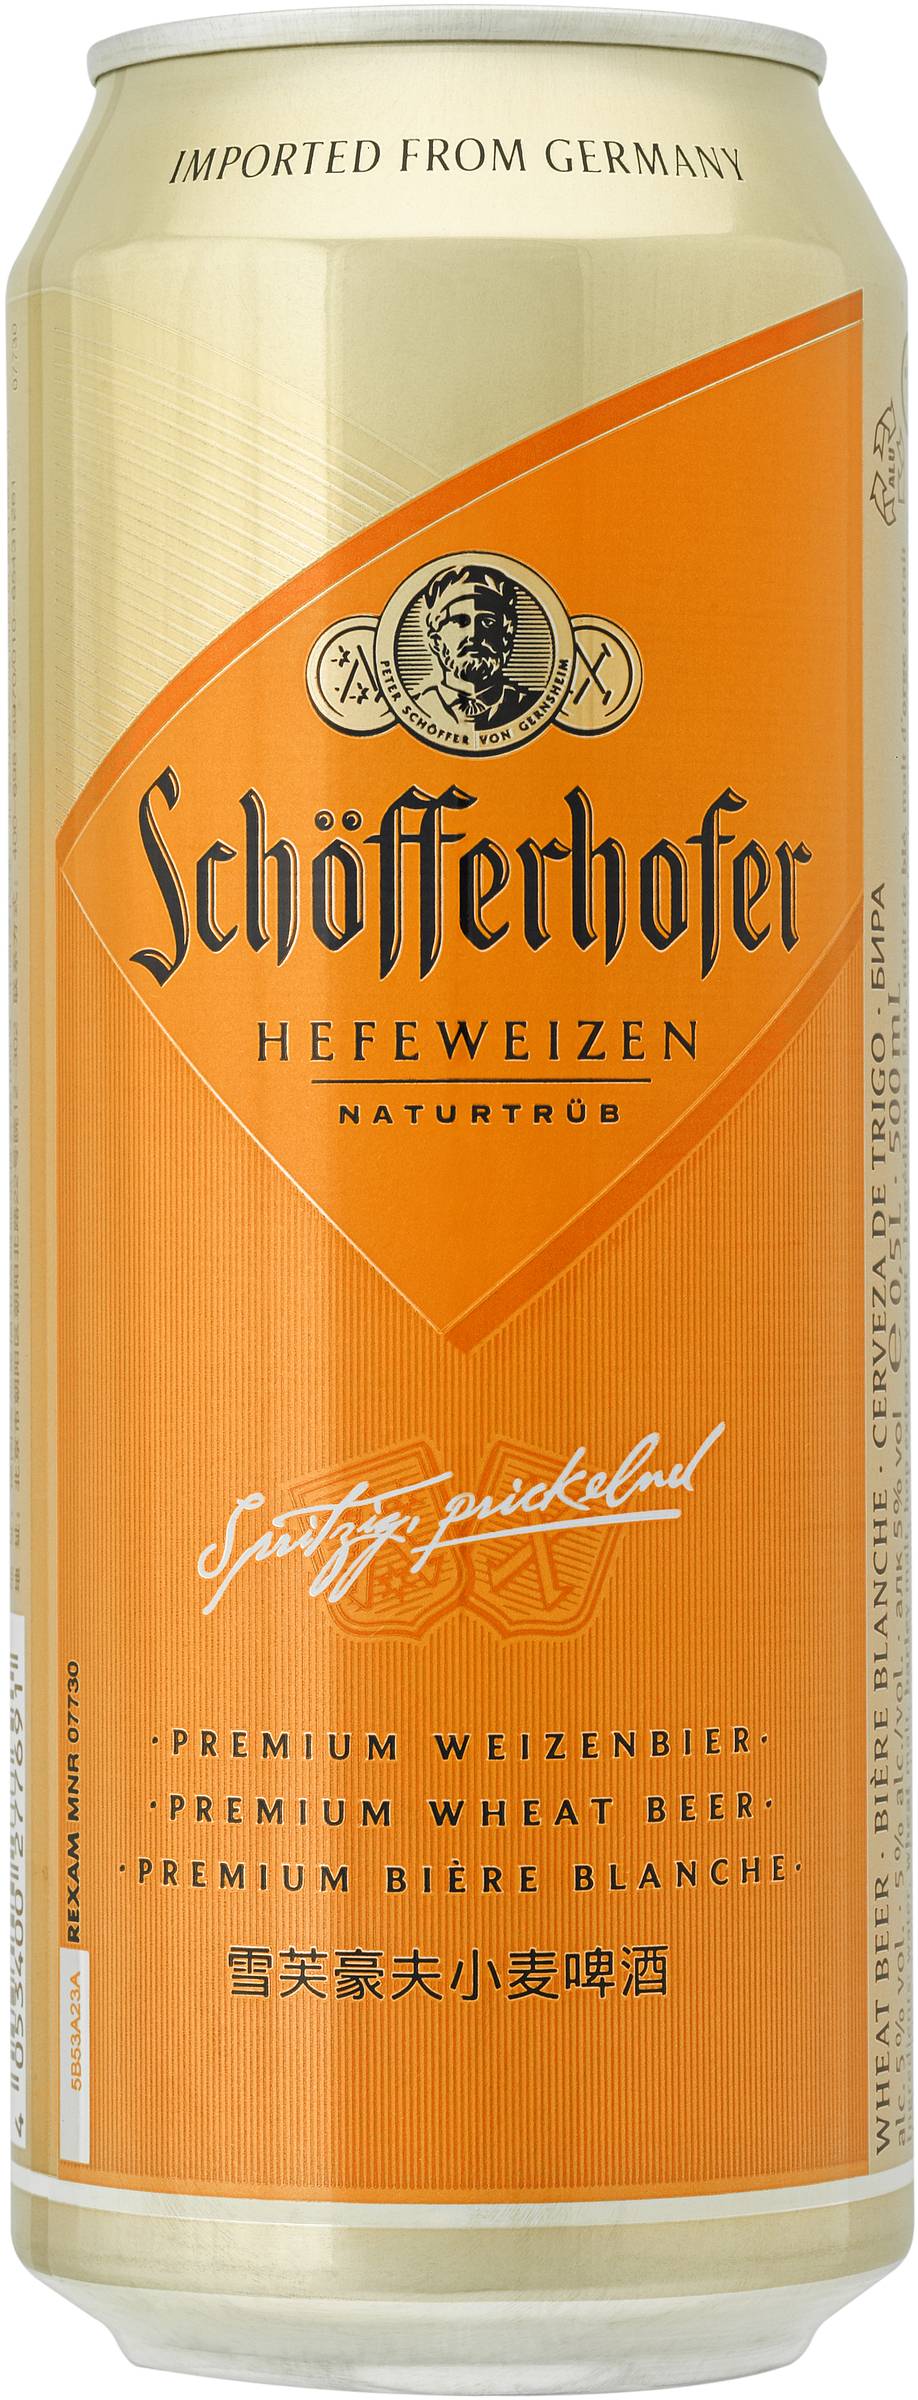 Schofferhofer Hefe Can 500mL X 4 pack